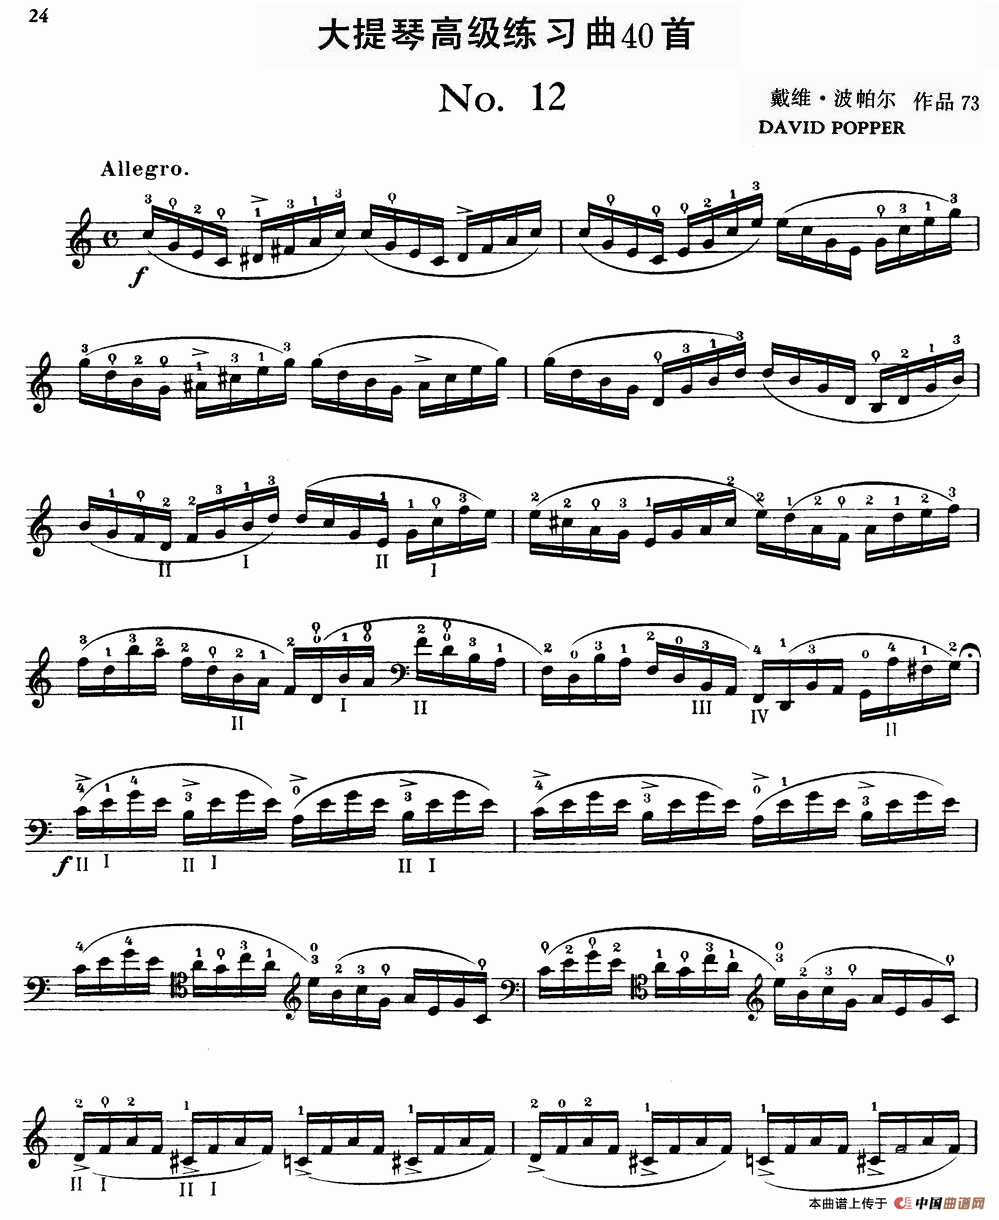 大提琴高级练习曲40首 No.12